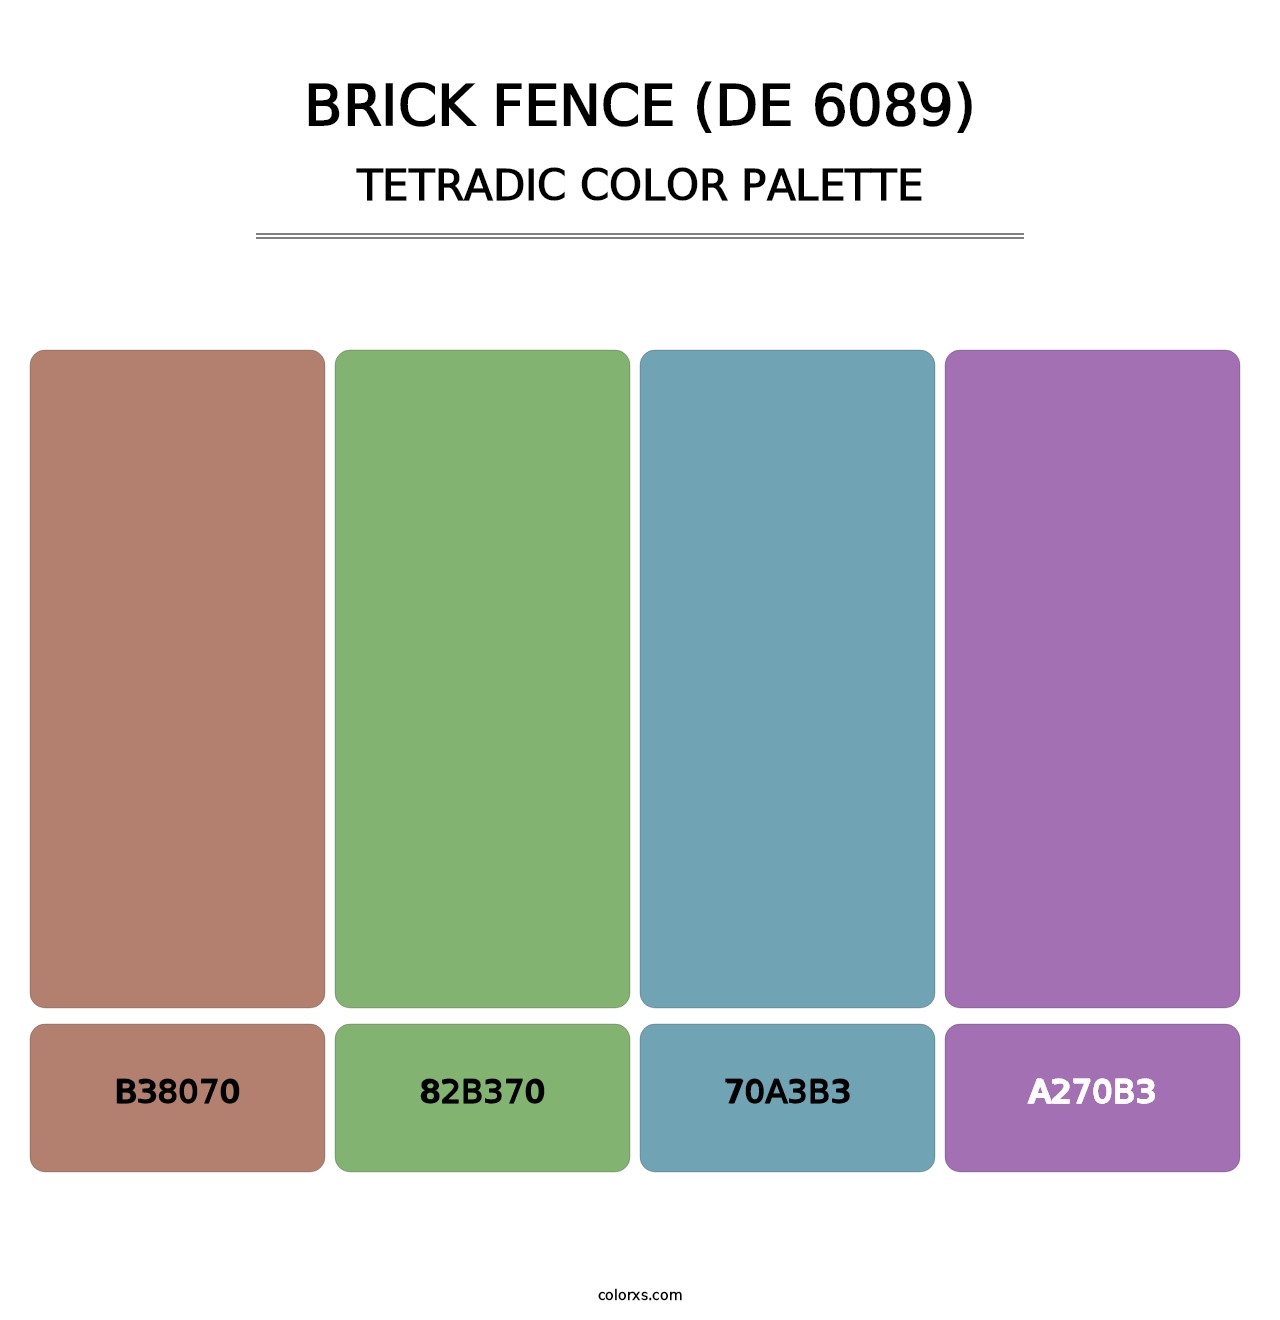 Brick Fence (DE 6089) - Tetradic Color Palette